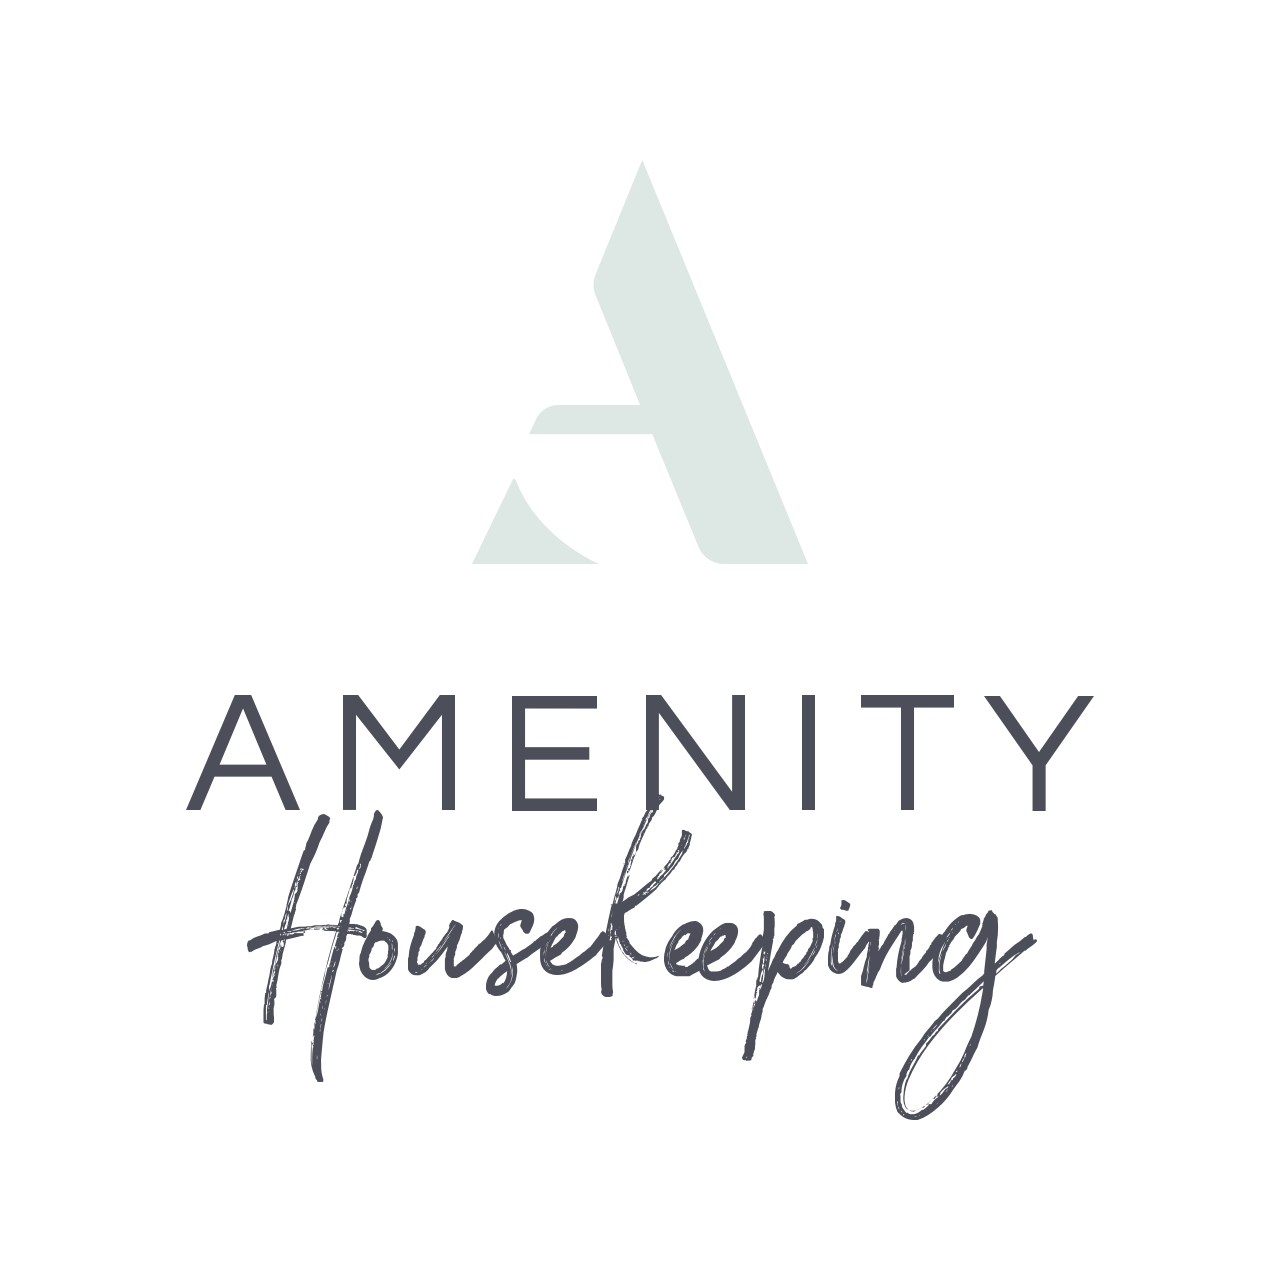 Amenity Housekeeping